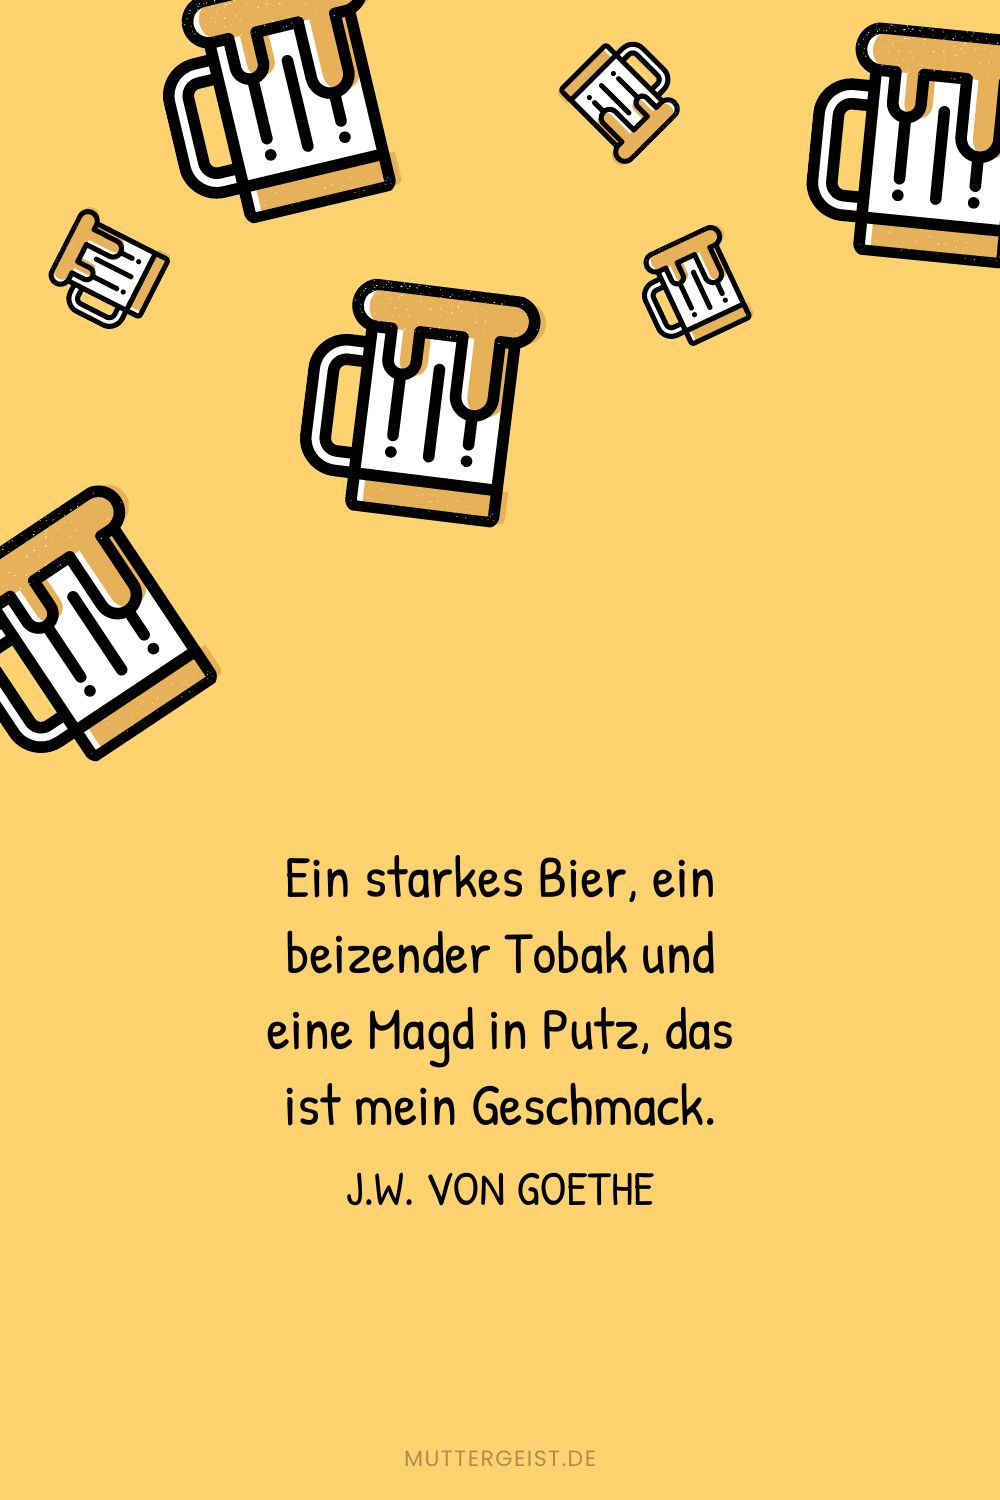 Johann Wolfgang von Goethes Zitat über Bier